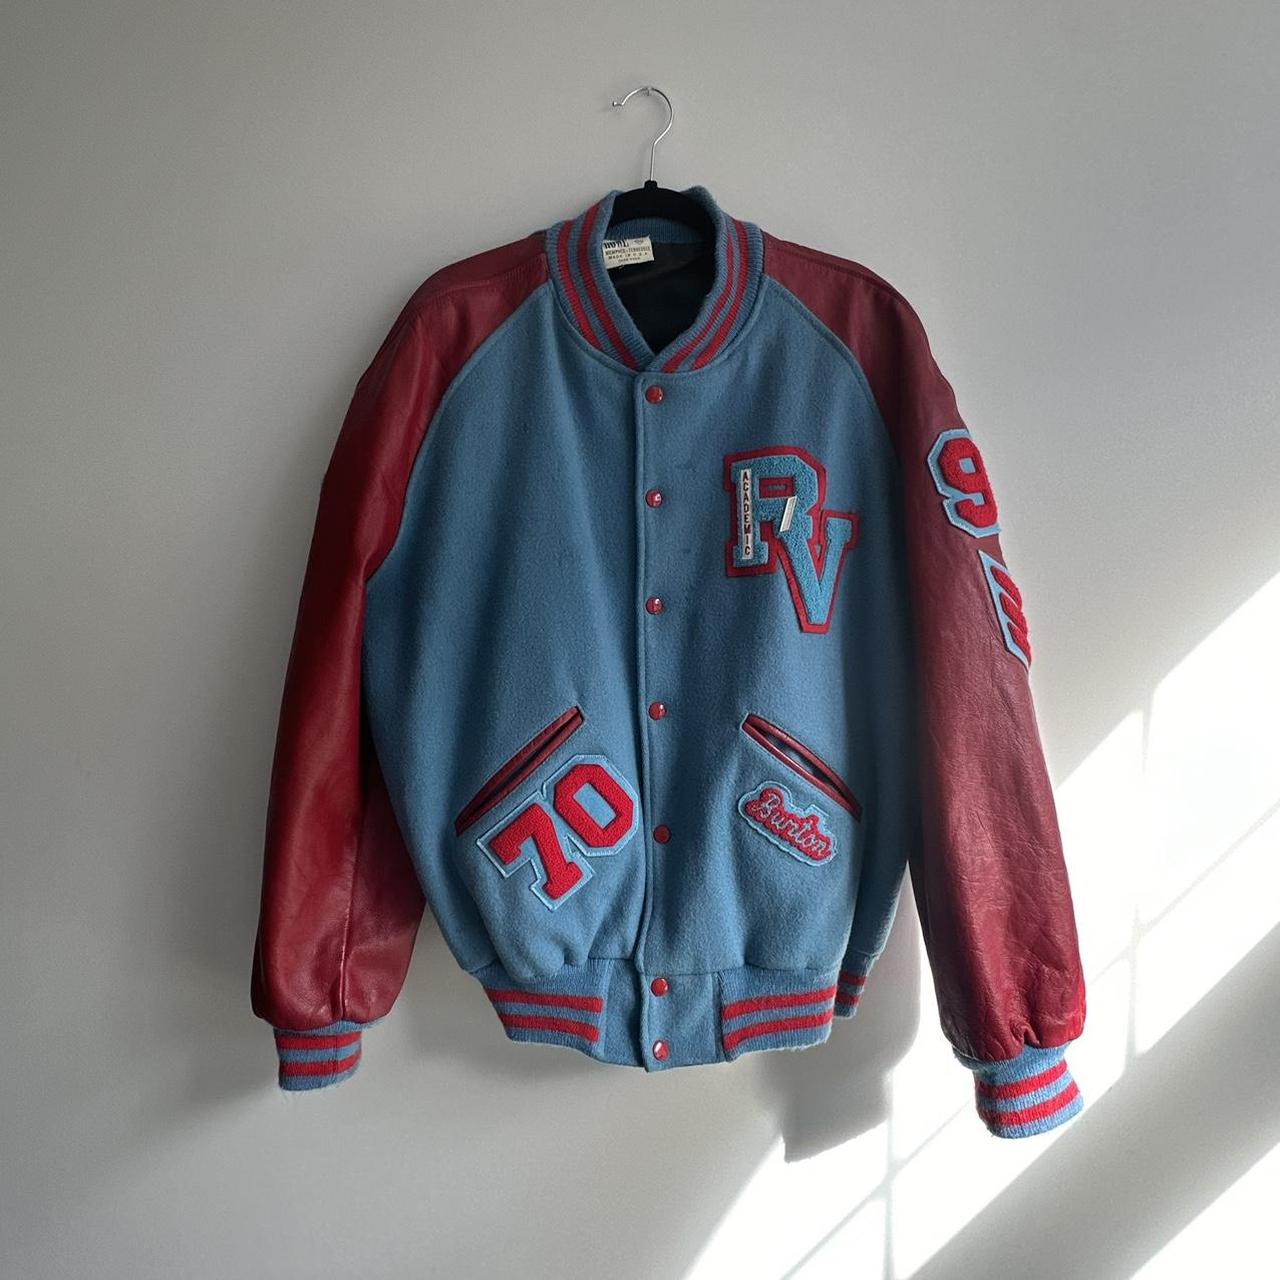 Vintage varsity jacket. Size L/XL - Depop